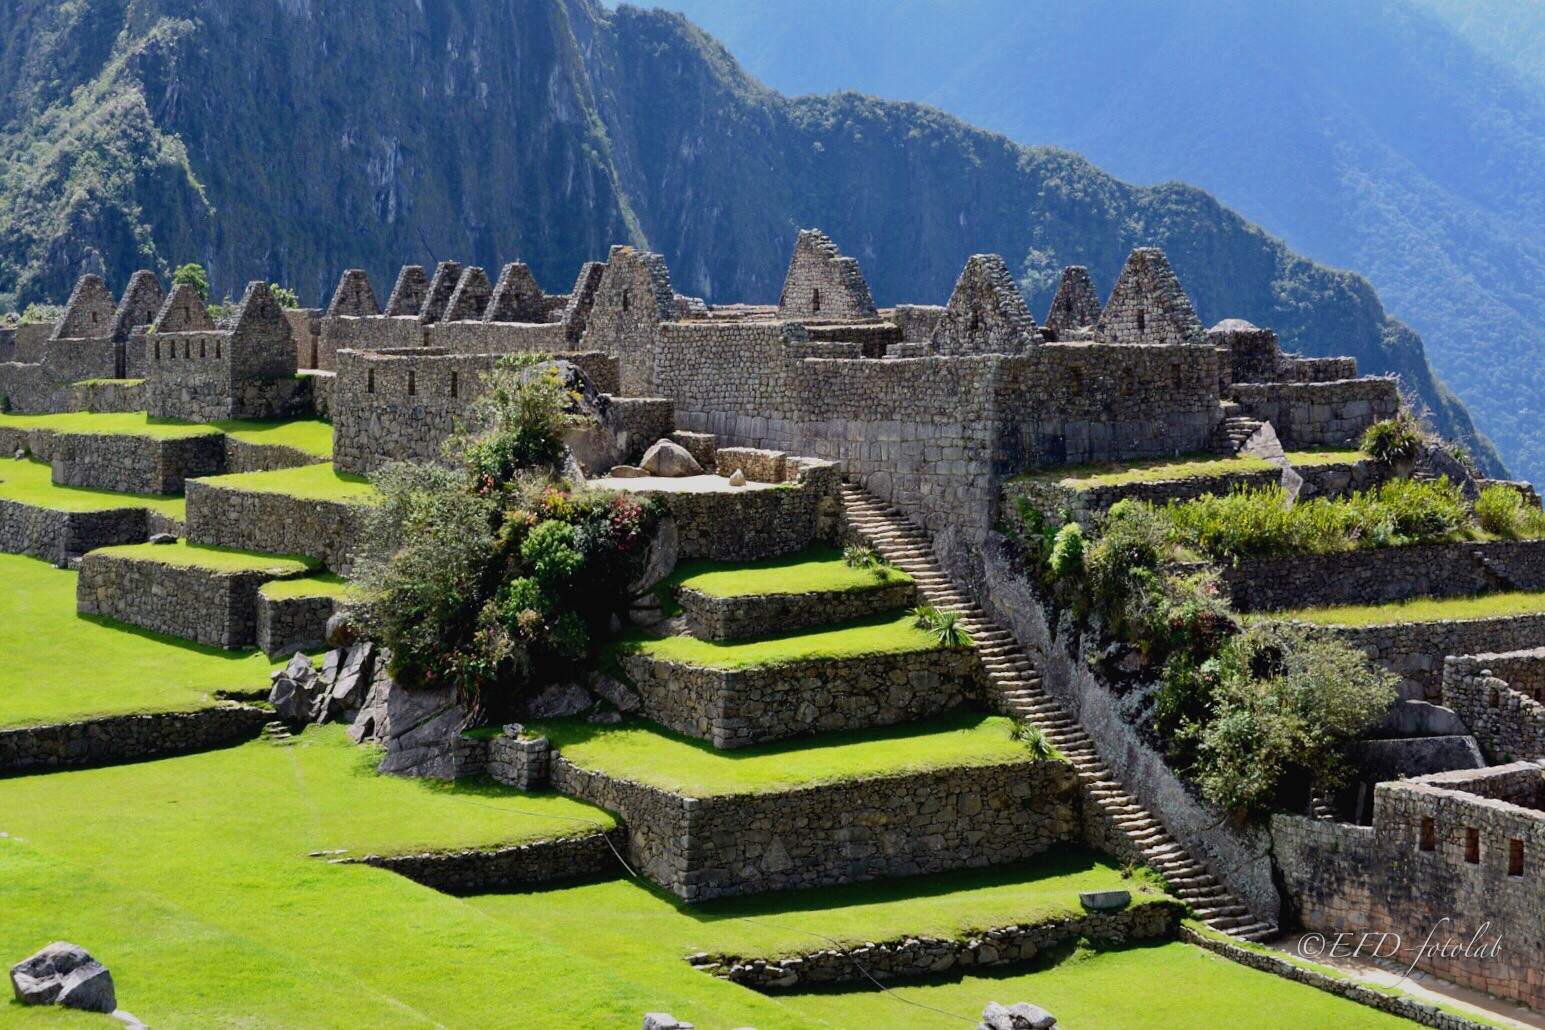 Escaleras y terrazas Incas en Machu Picchu, Perú